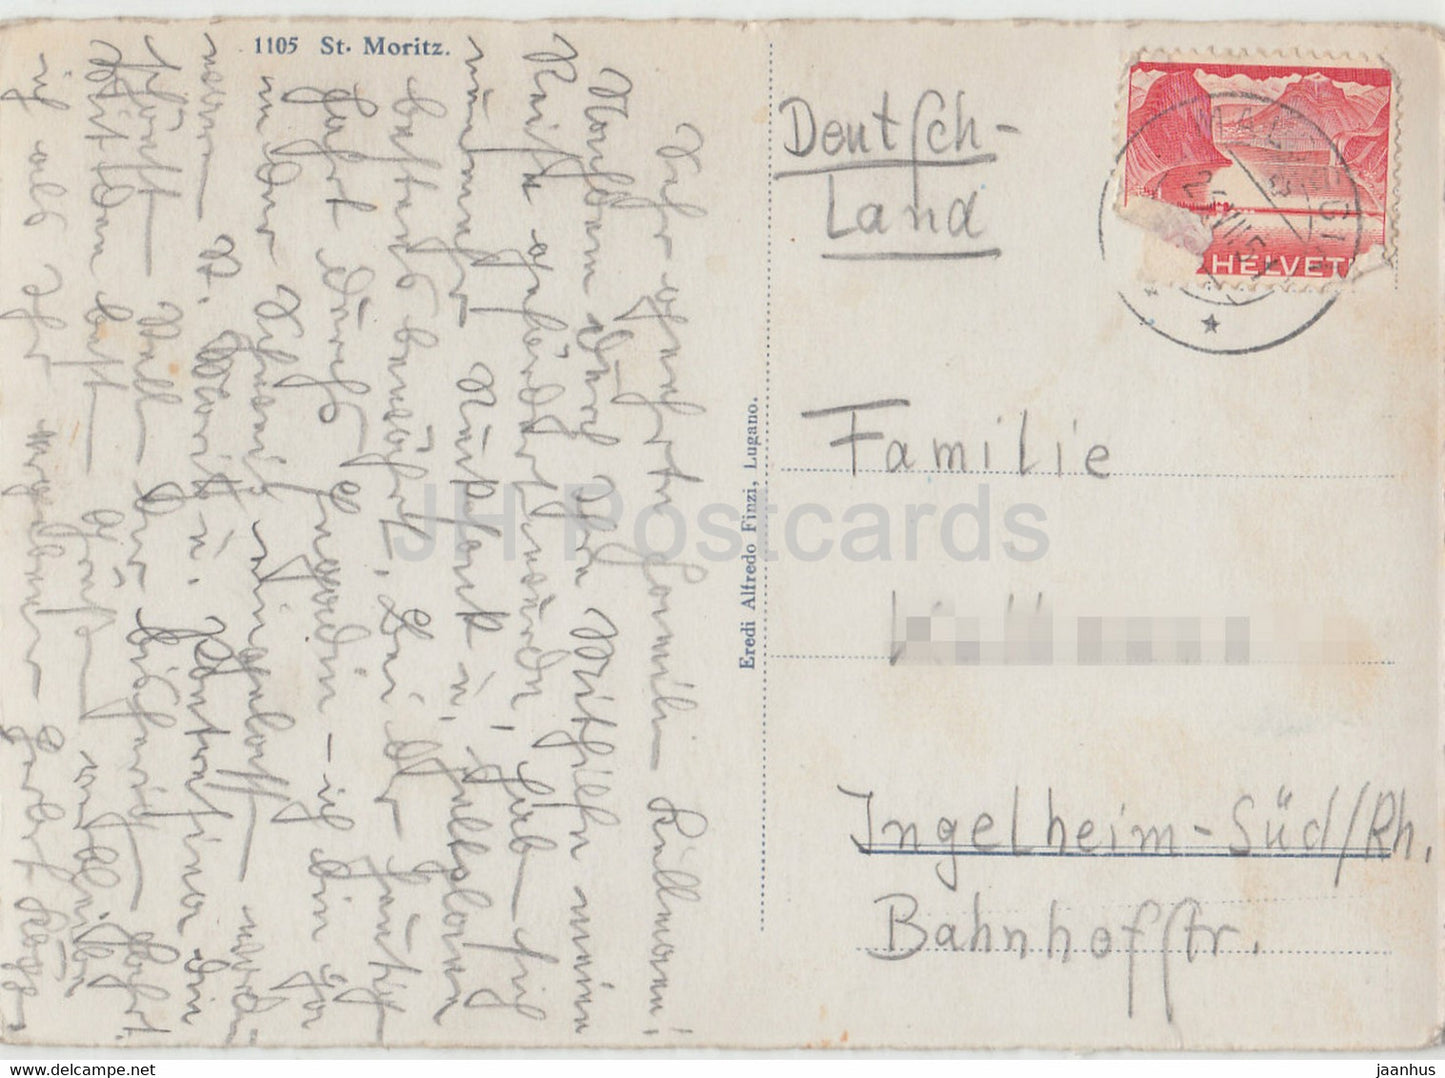 St. Moritz – 1105 – alte Postkarte – 1951 – Schweiz – gebraucht